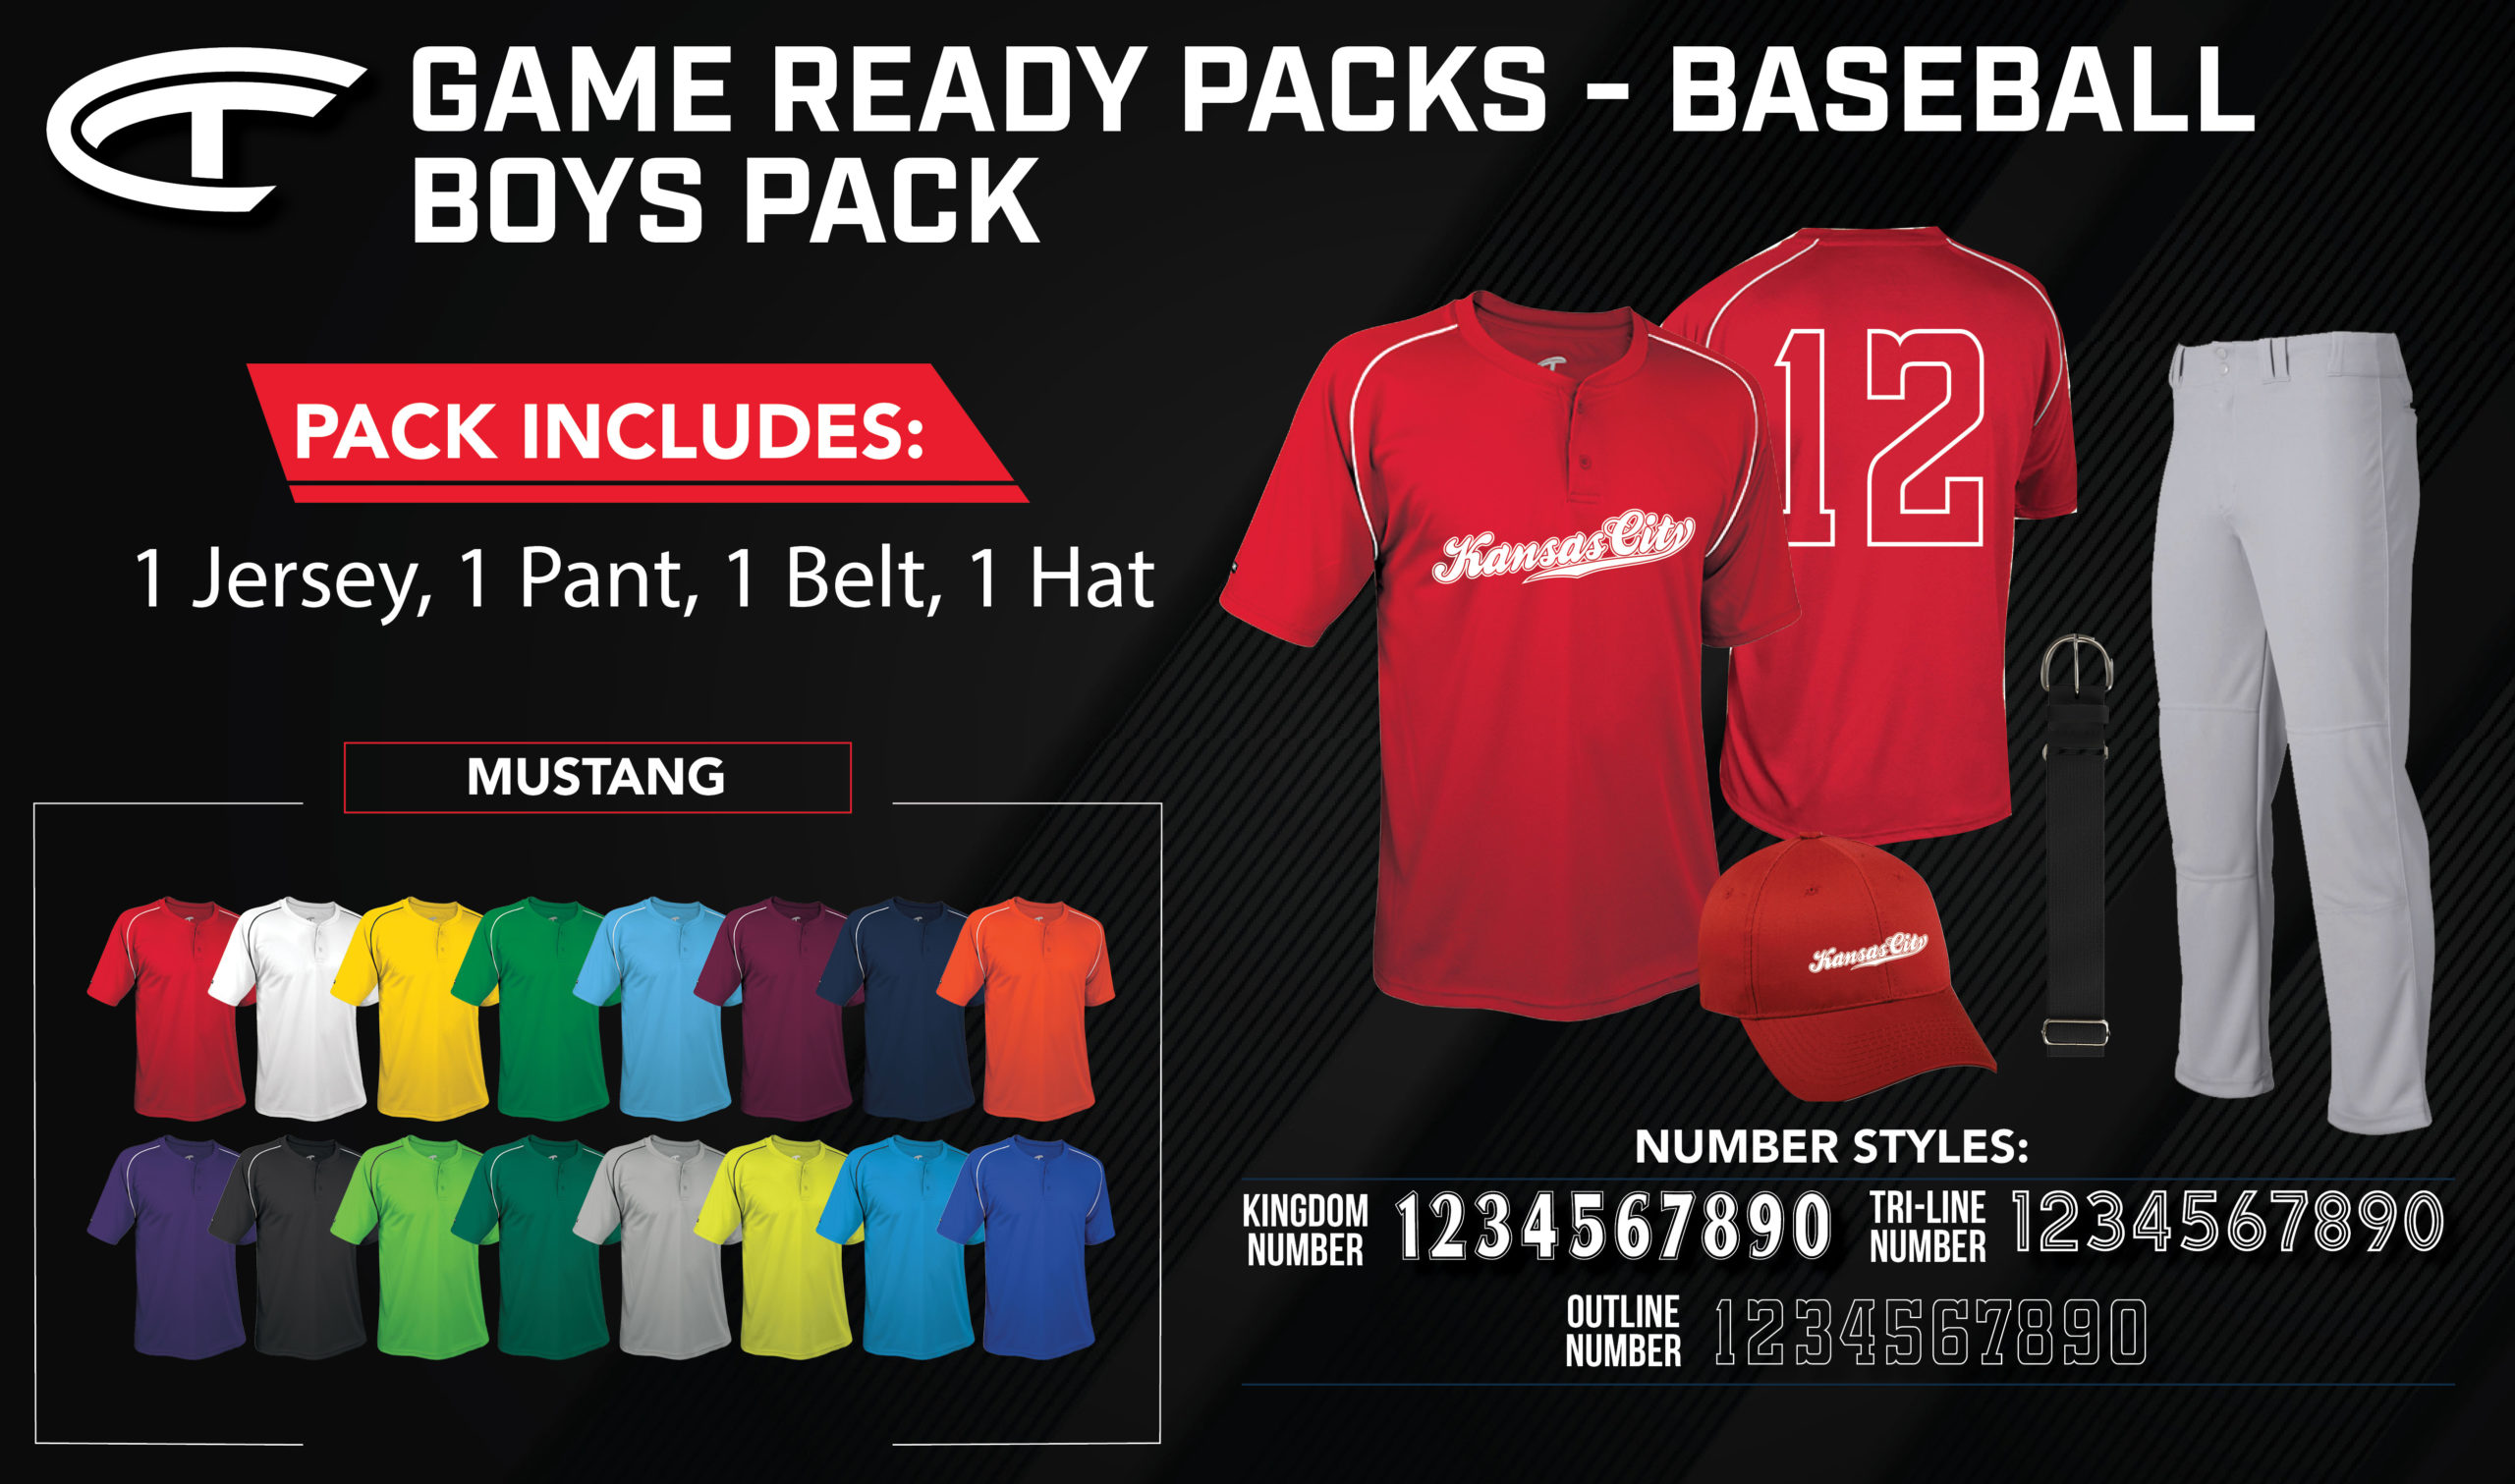 GameReadyPacks-Baseball-Eblast-Mustang